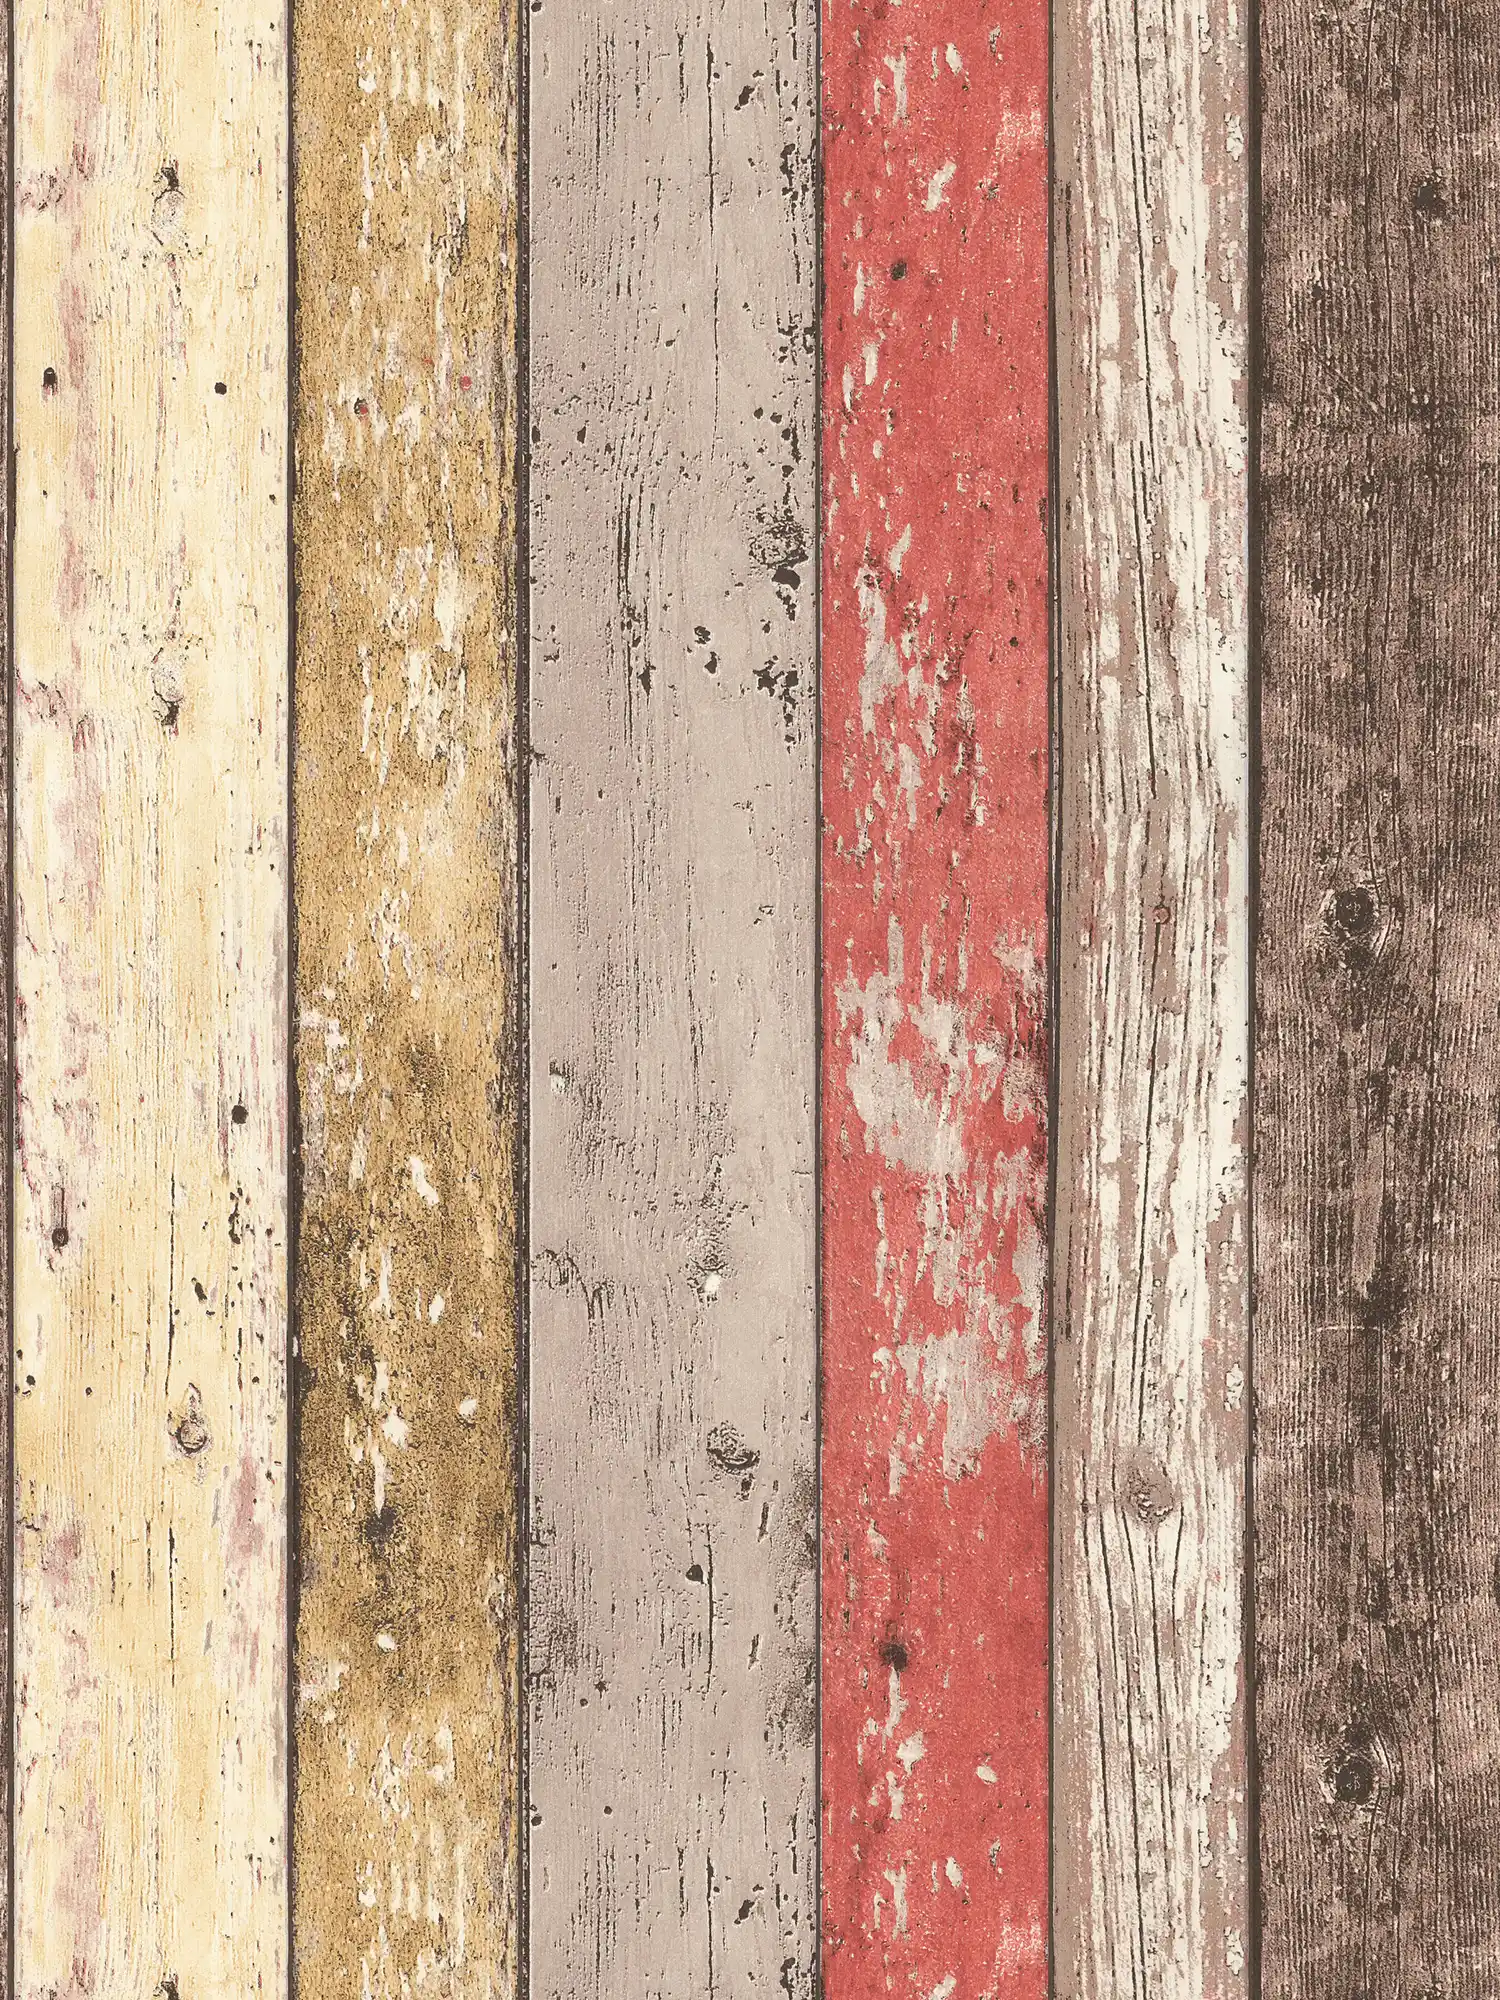 Papier peint bois avec aspect usé pour style vintage & maison de campagne - marron, rouge, beige
